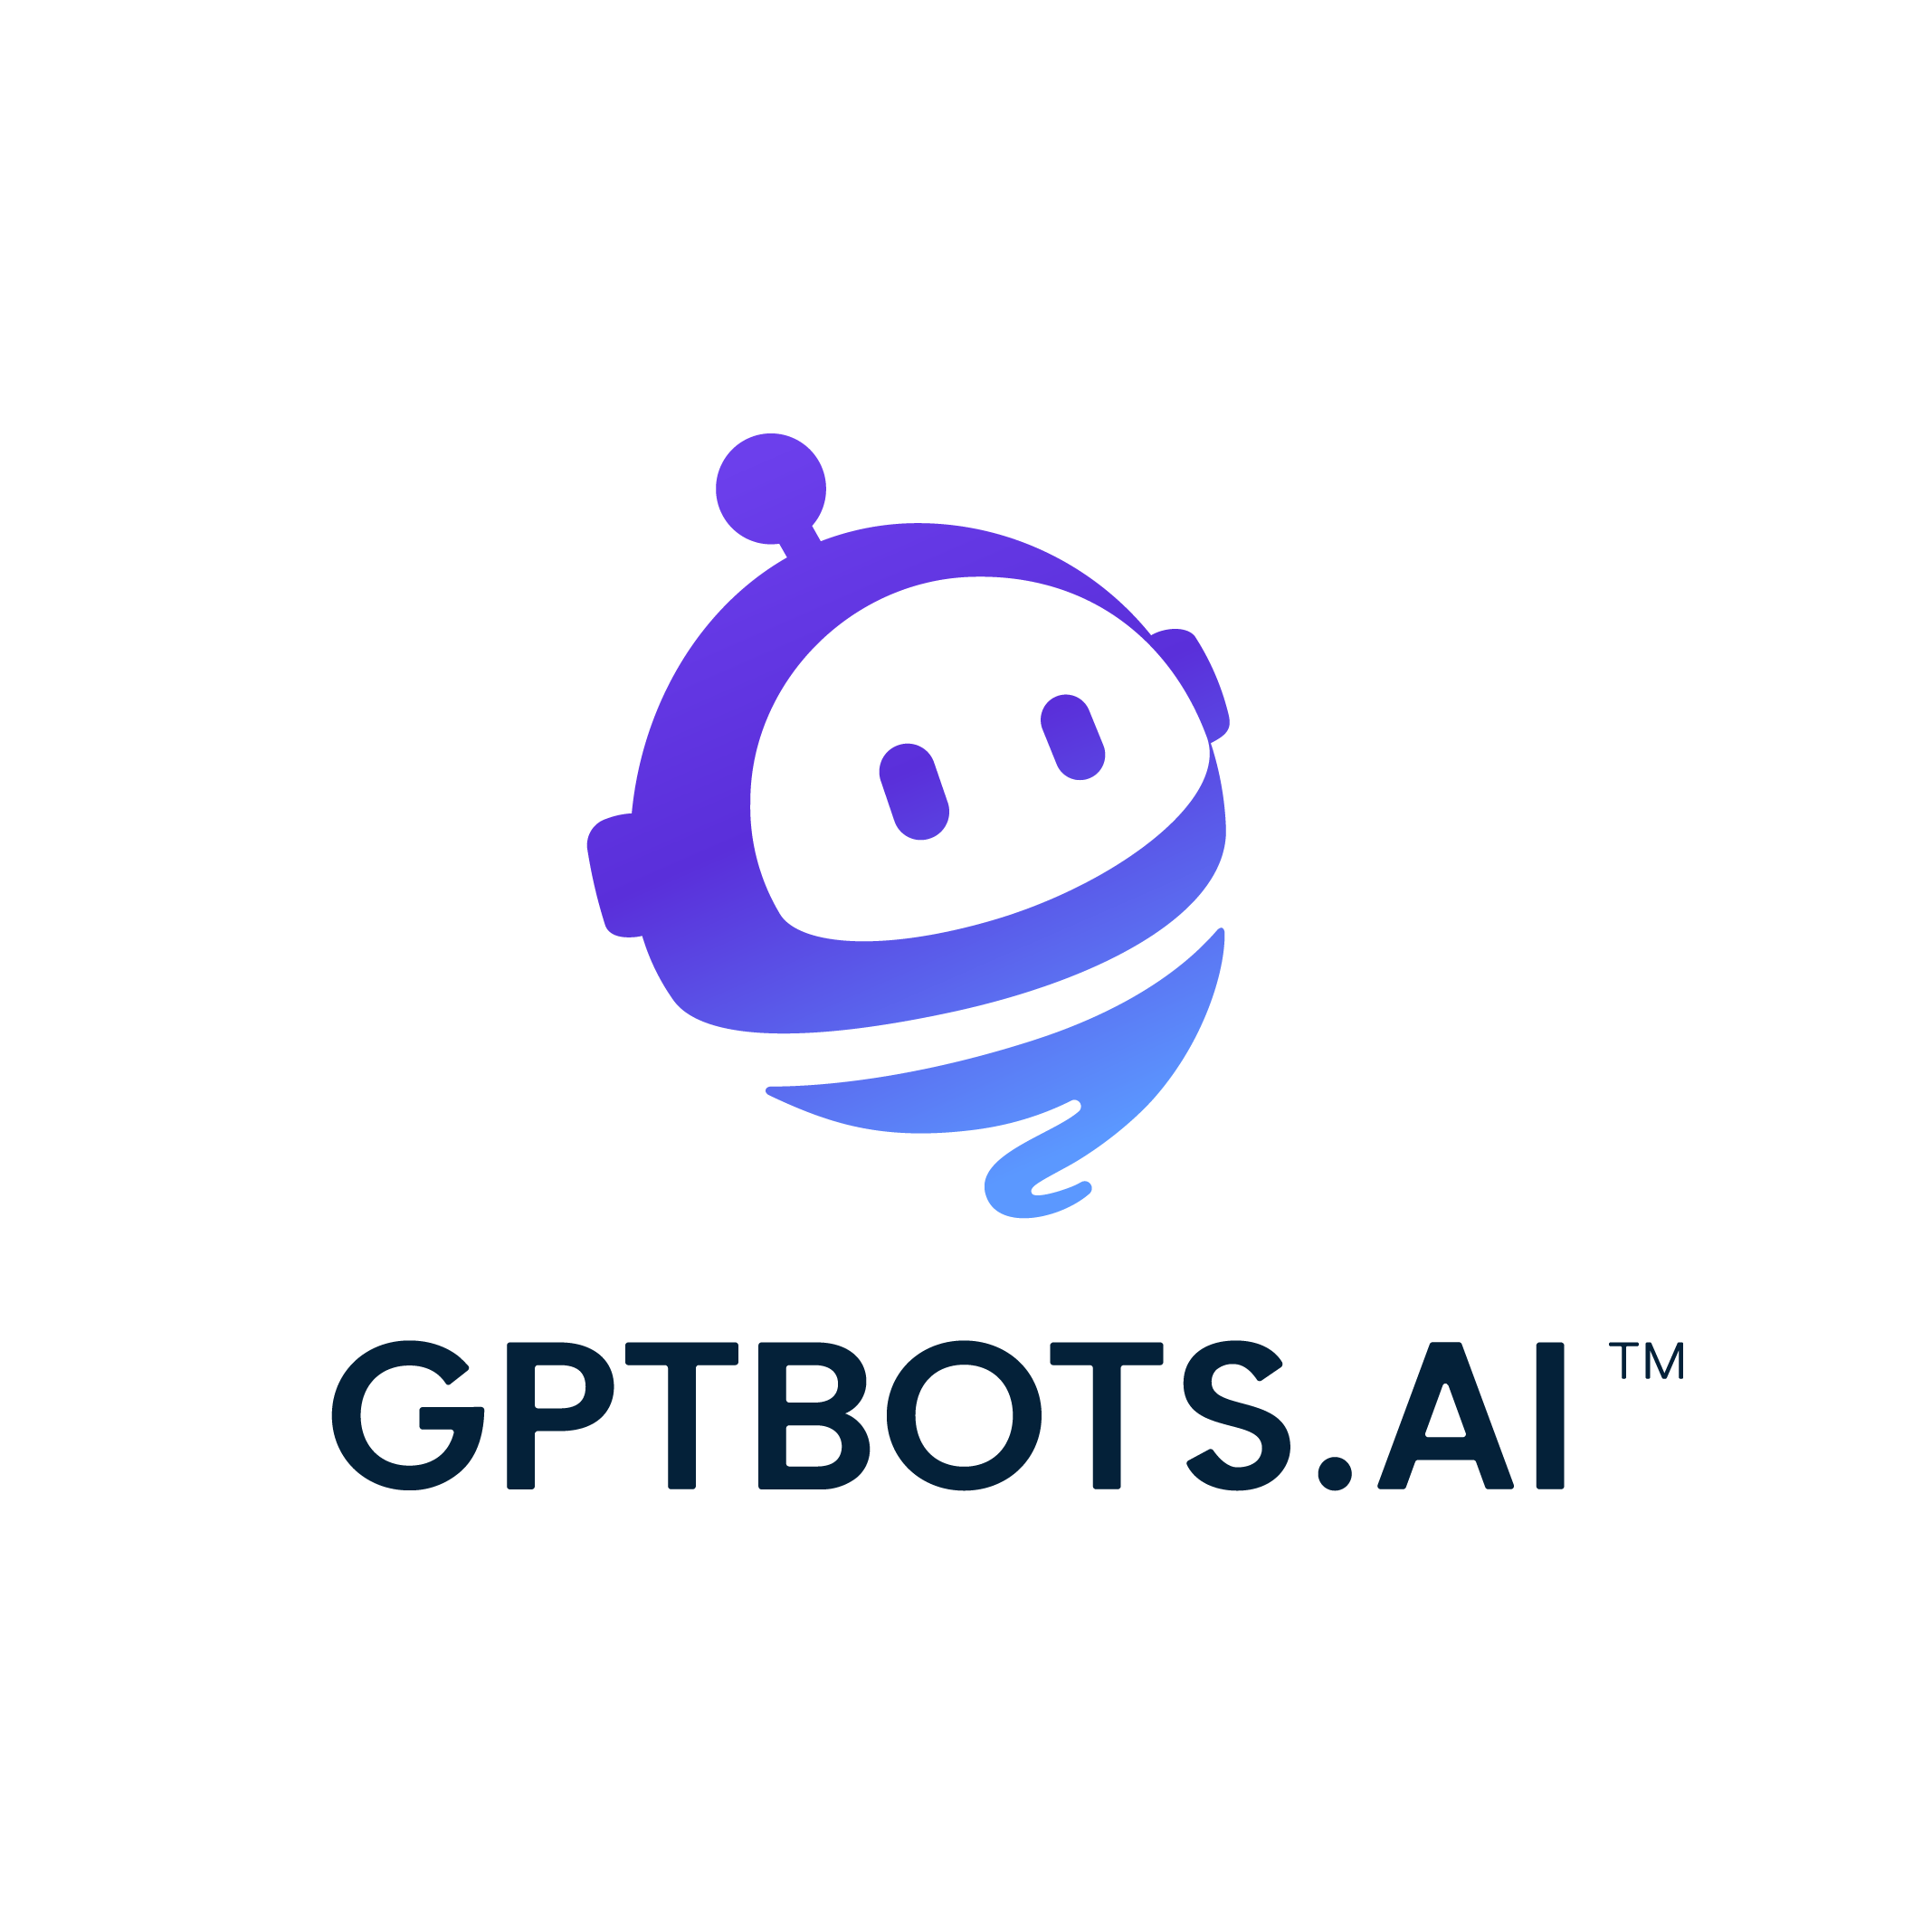 GPTBots logo